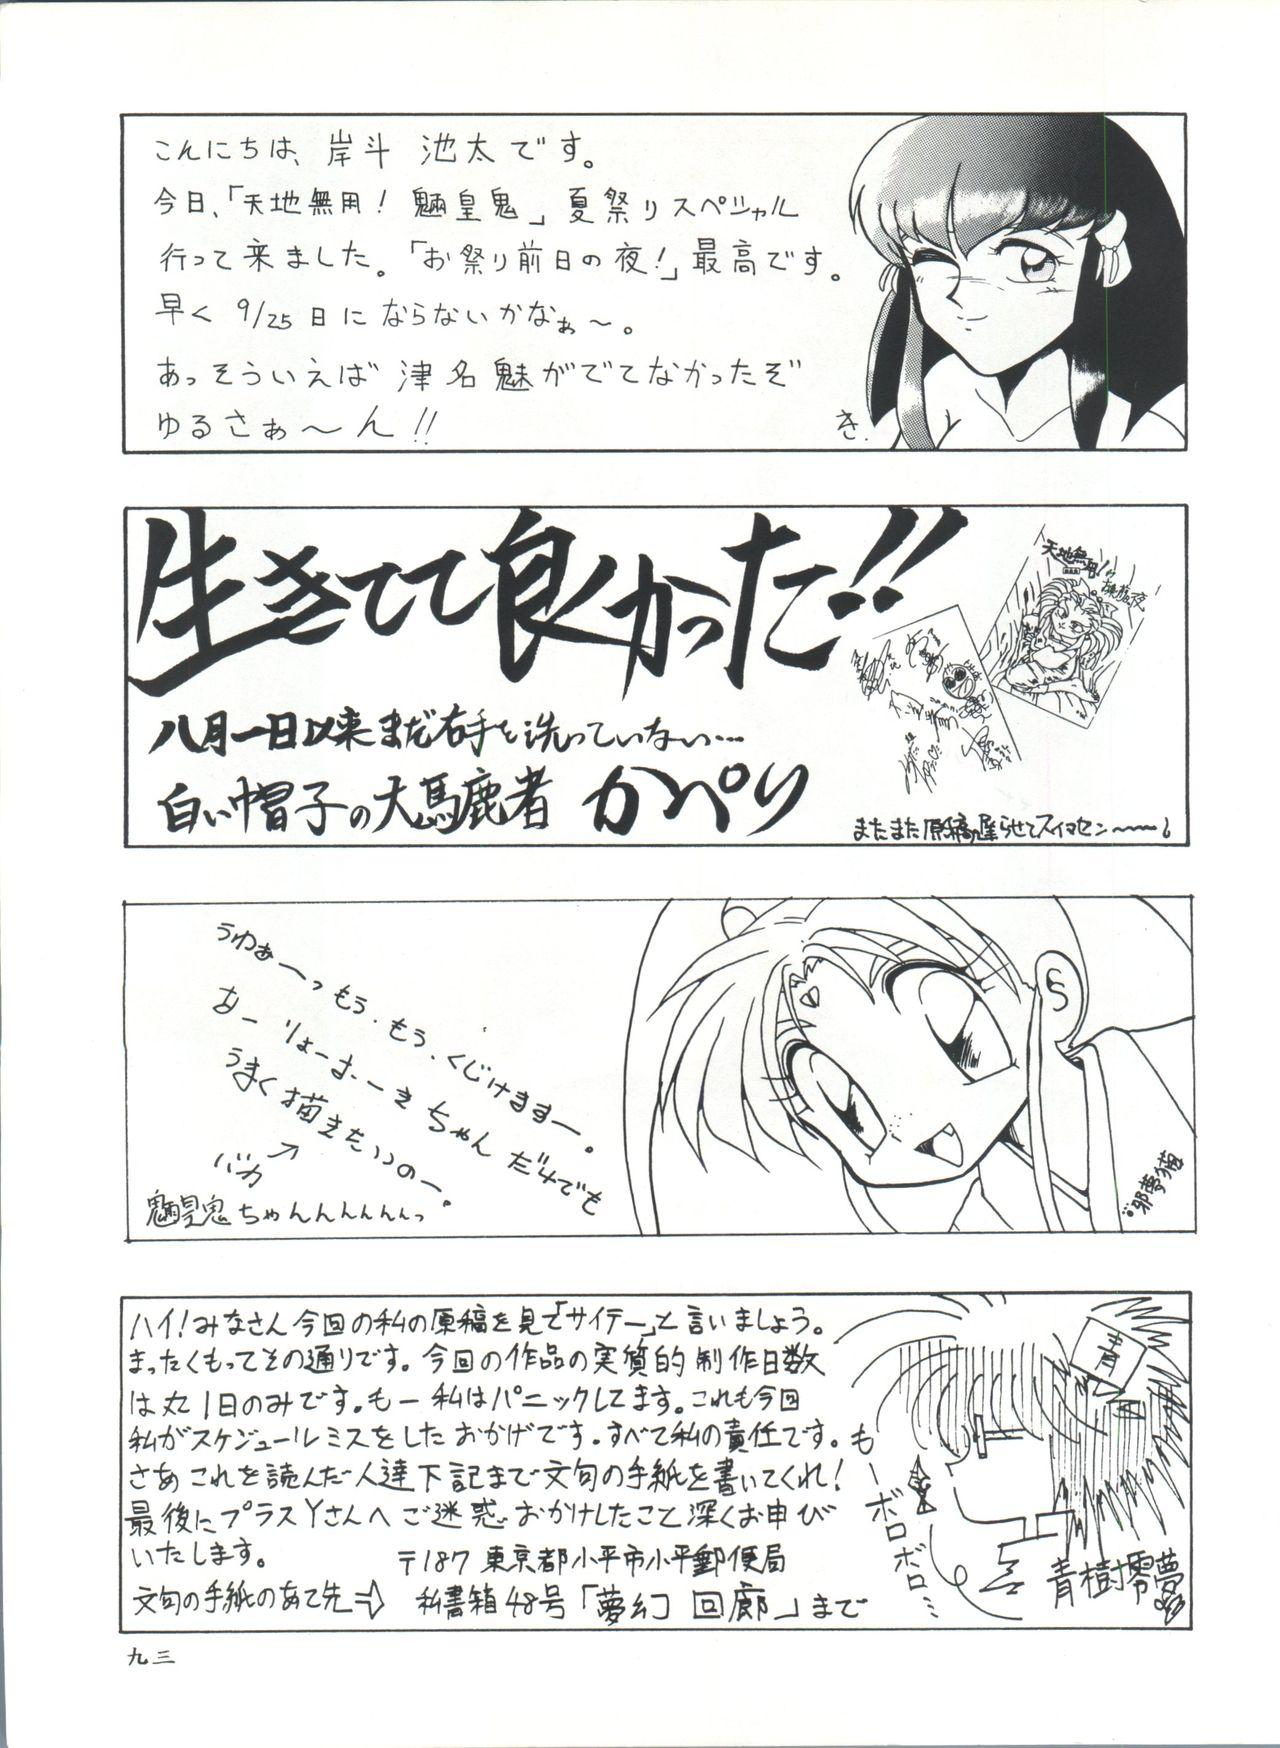 Plus-Y Vol. 11 Konpeki no Tsukiyo 92